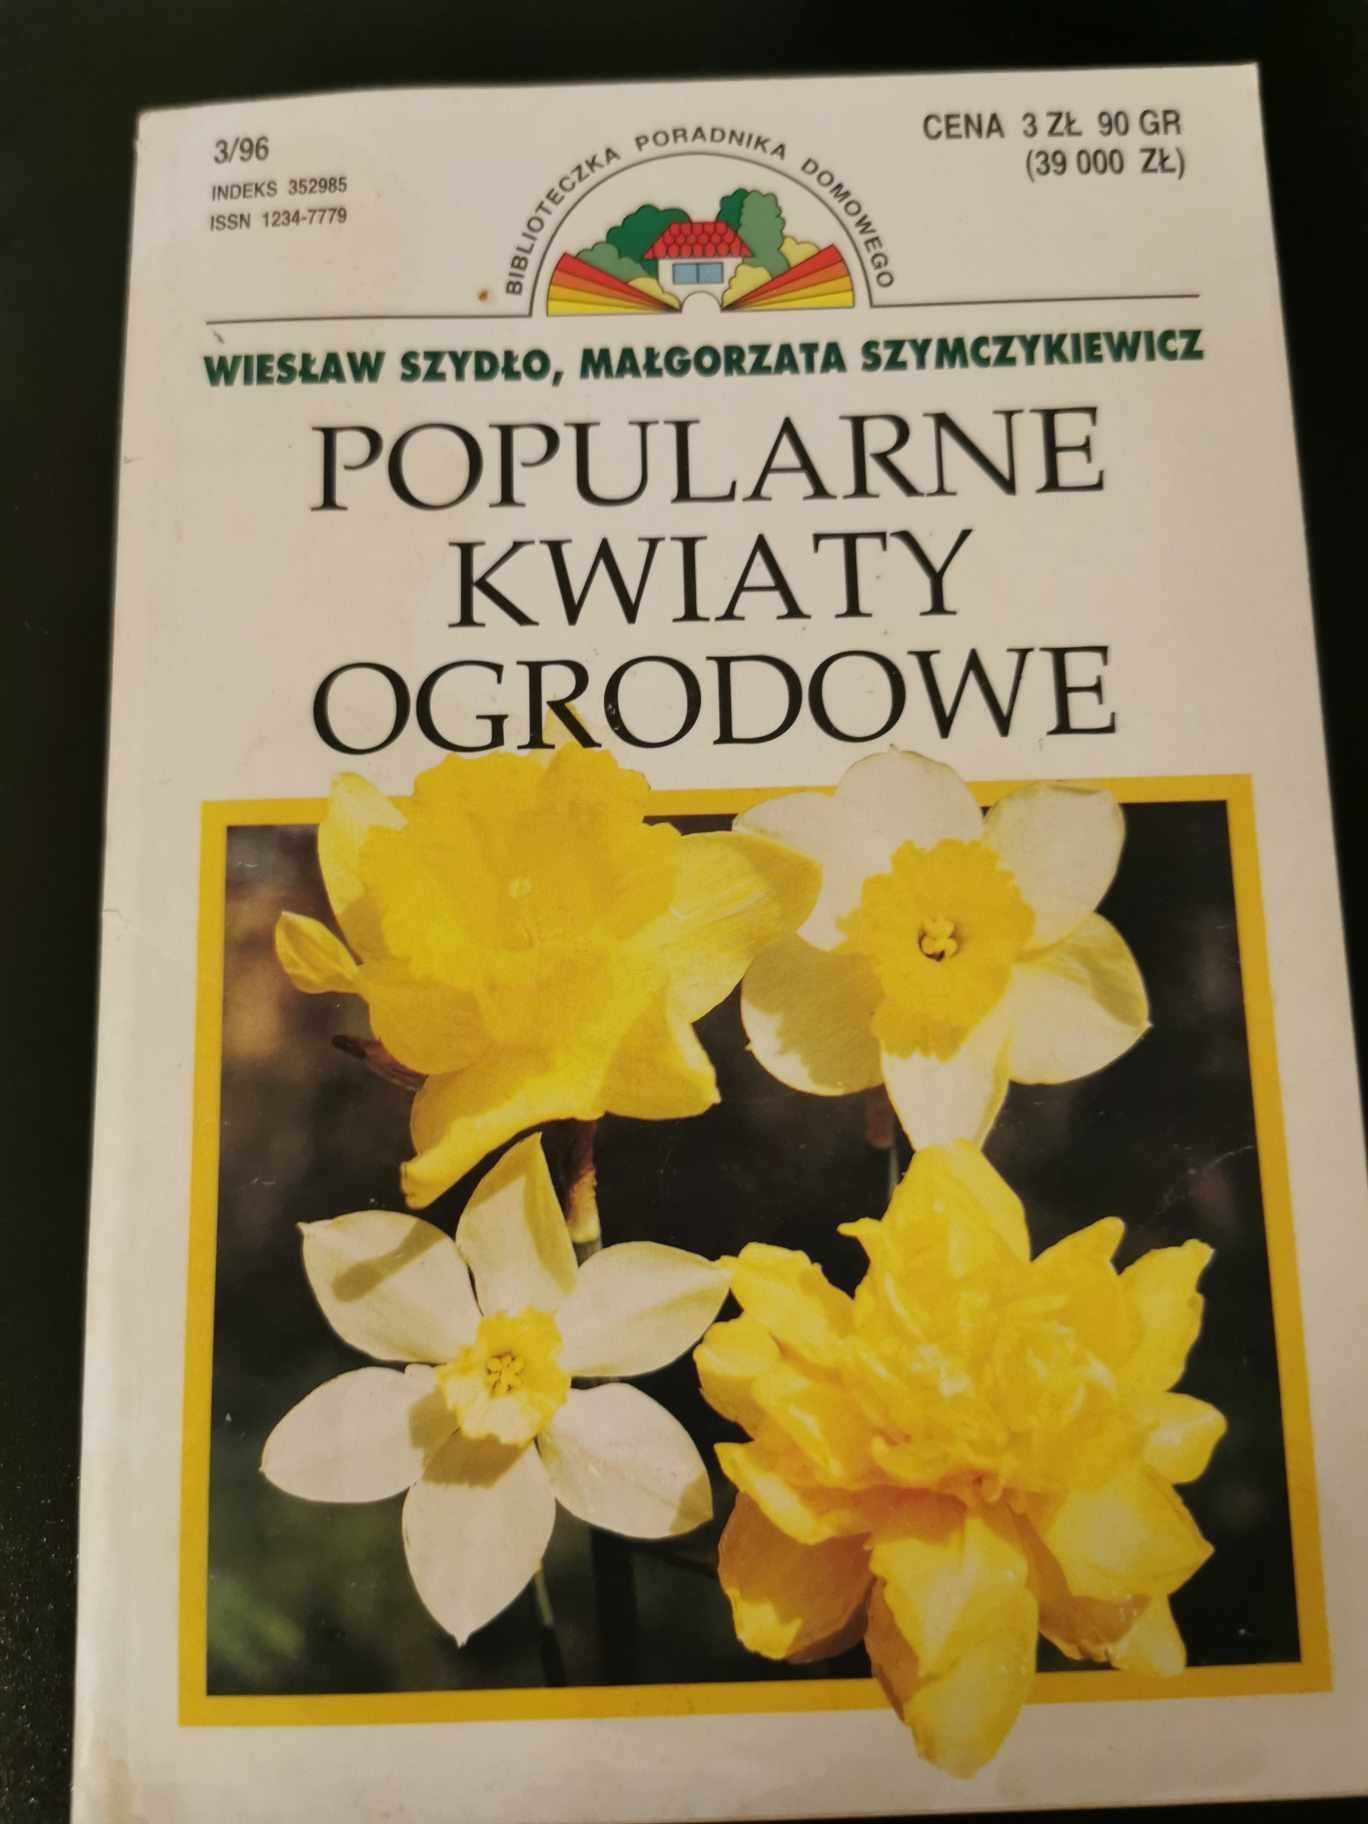 Popularne kwiaty ogrodowe - Wiesław Szydło, Małgorzata Szymczykiewicz